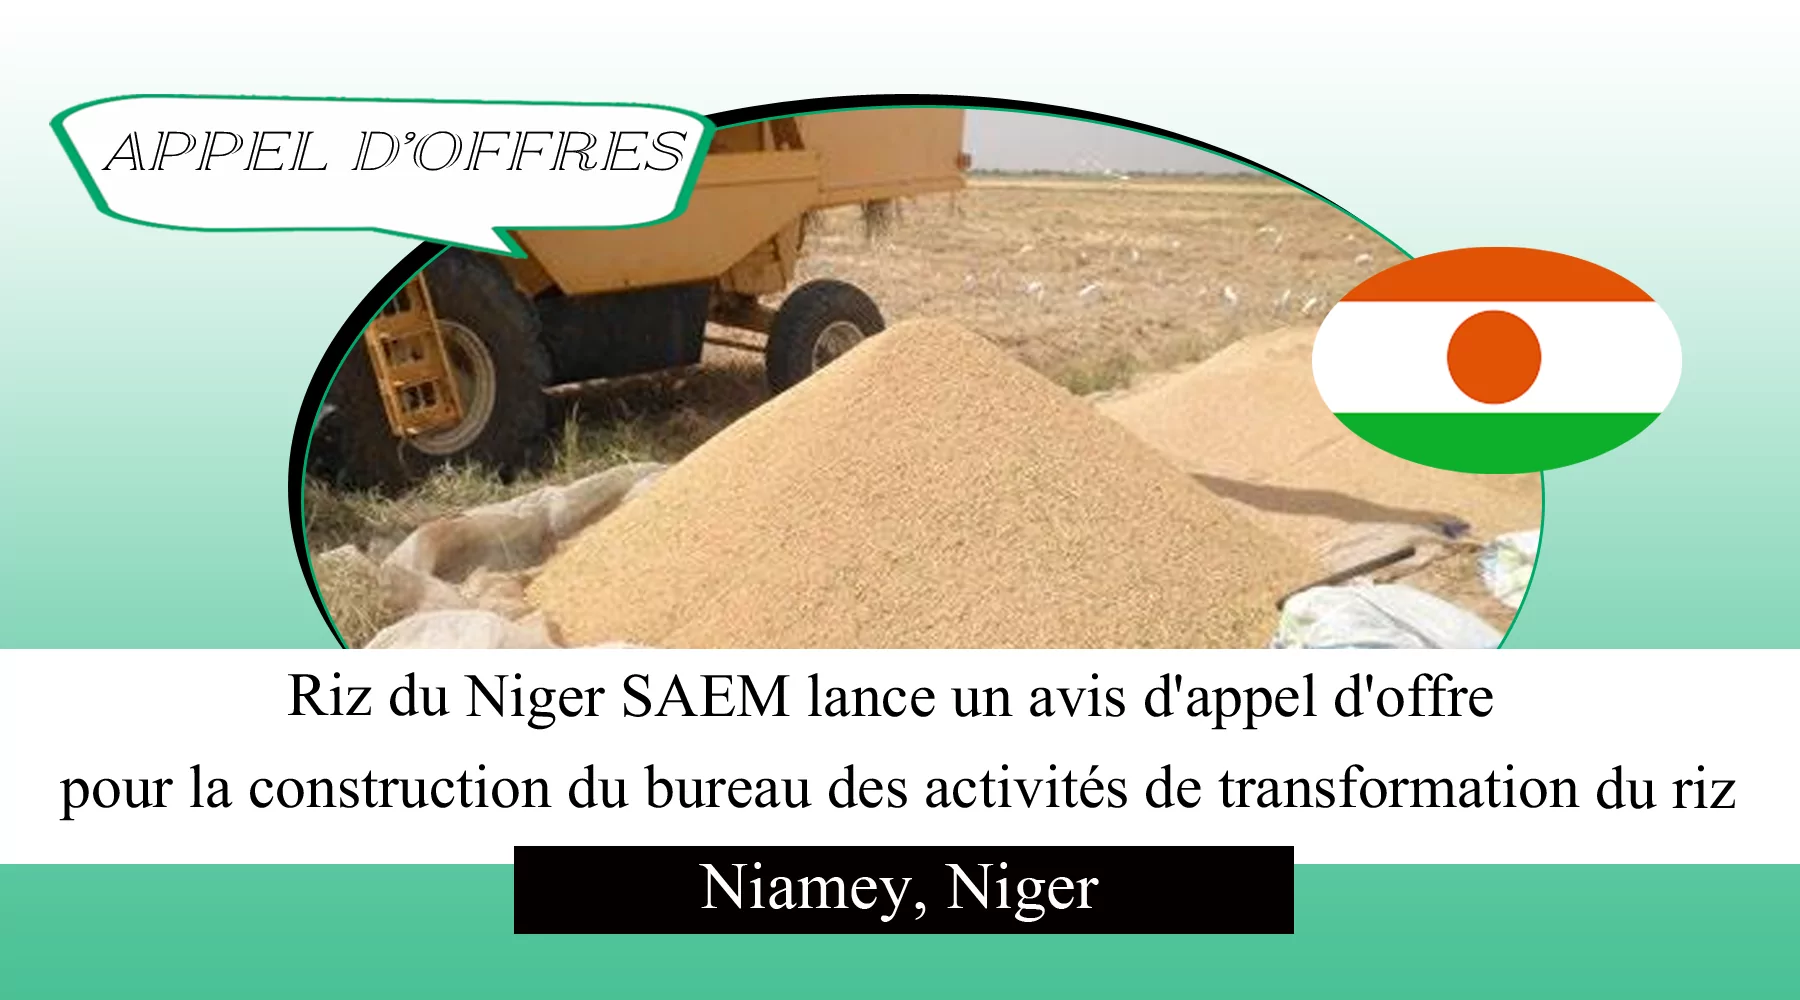 Riz du Niger SAEM lance un avis d’appel d’offre pour la construction du bureau des activités de transformation du riz, Niamey